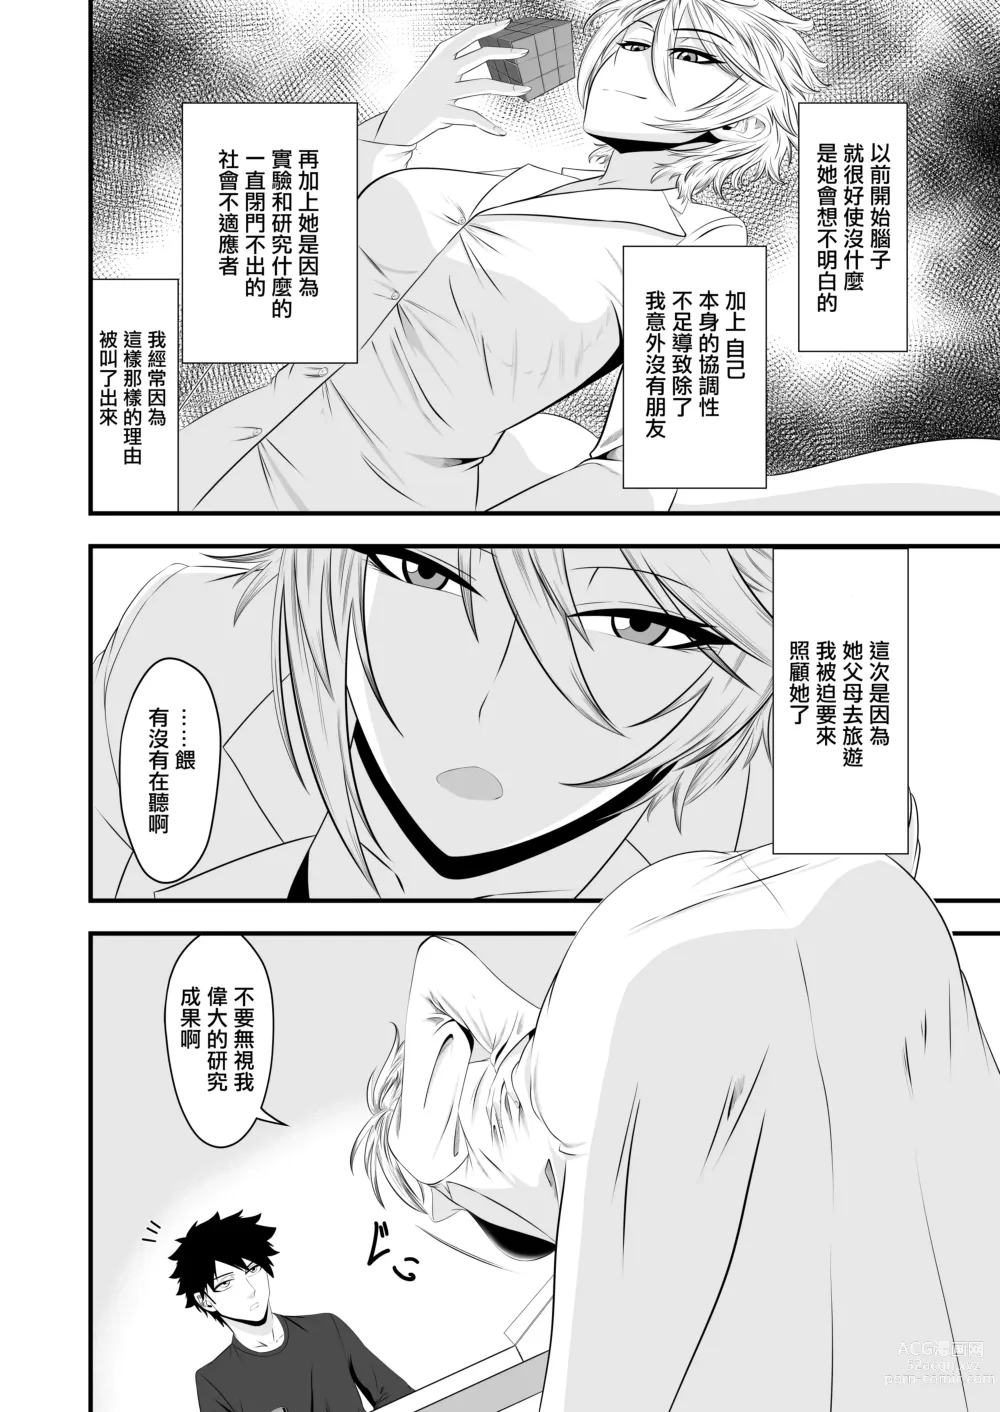 Page 4 of doujinshi 你是我的所有物嗎?